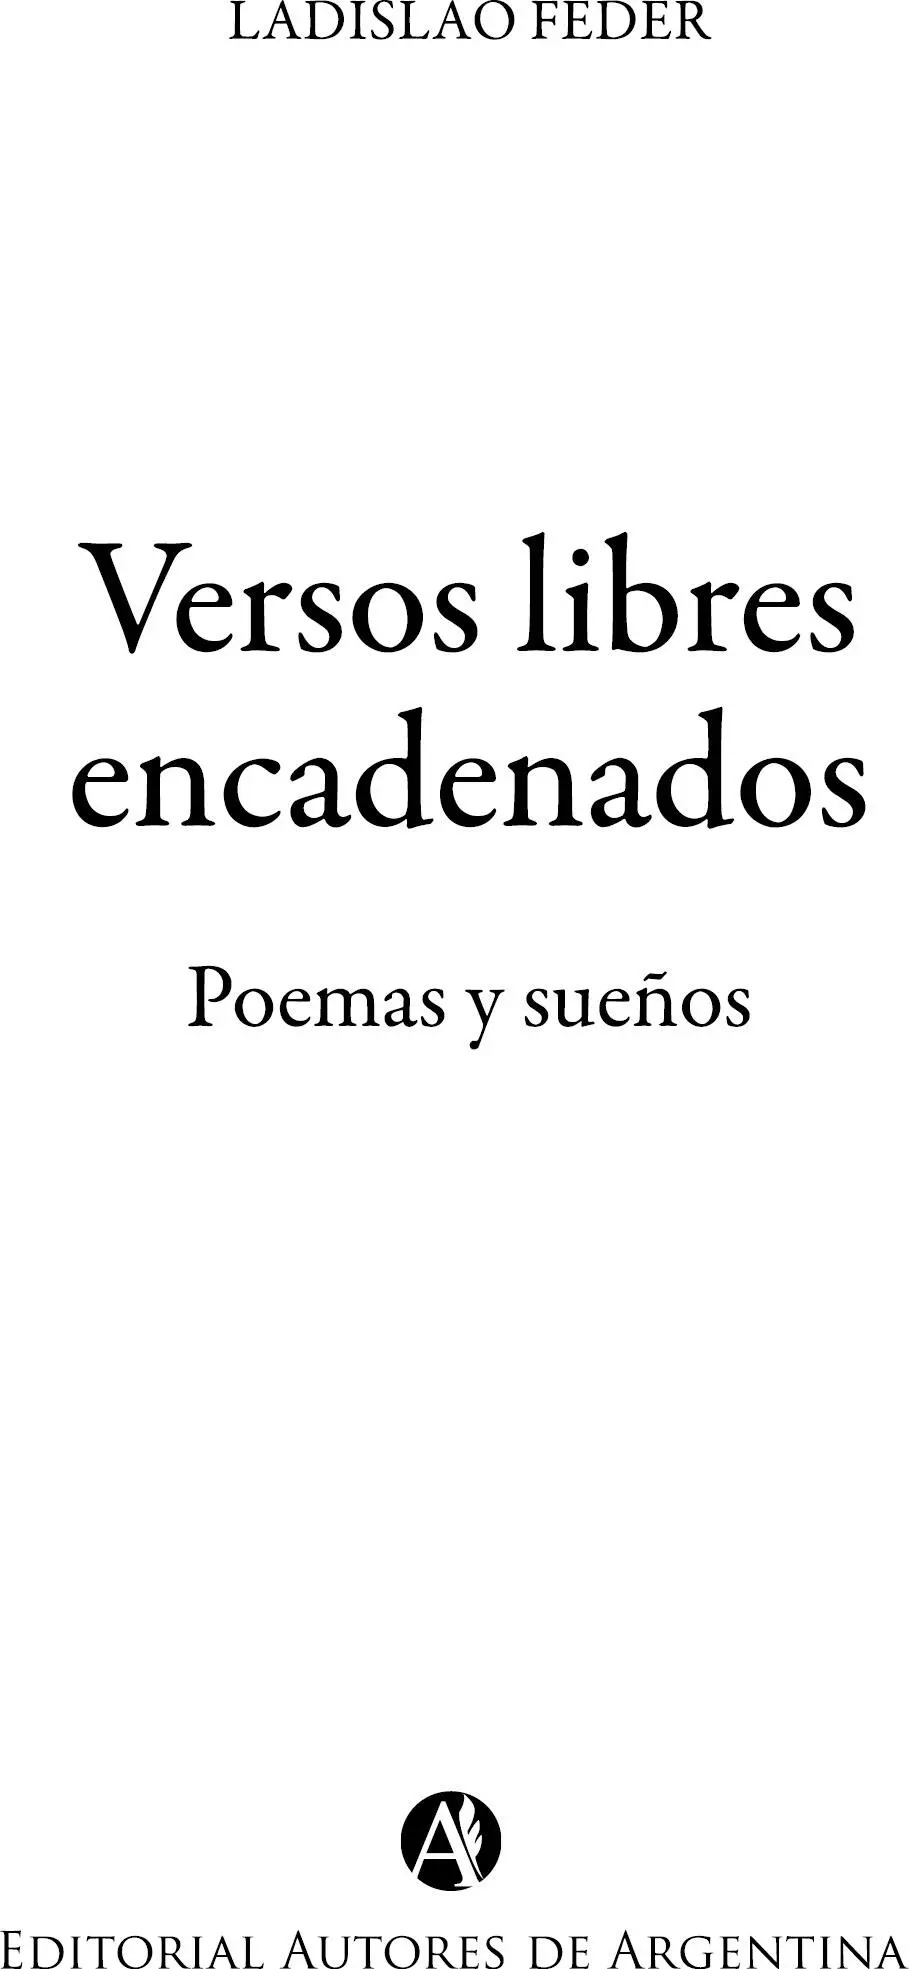 Ladislao Feder Versos libres encadenados poemas y sueños Ladislao Feder - фото 1